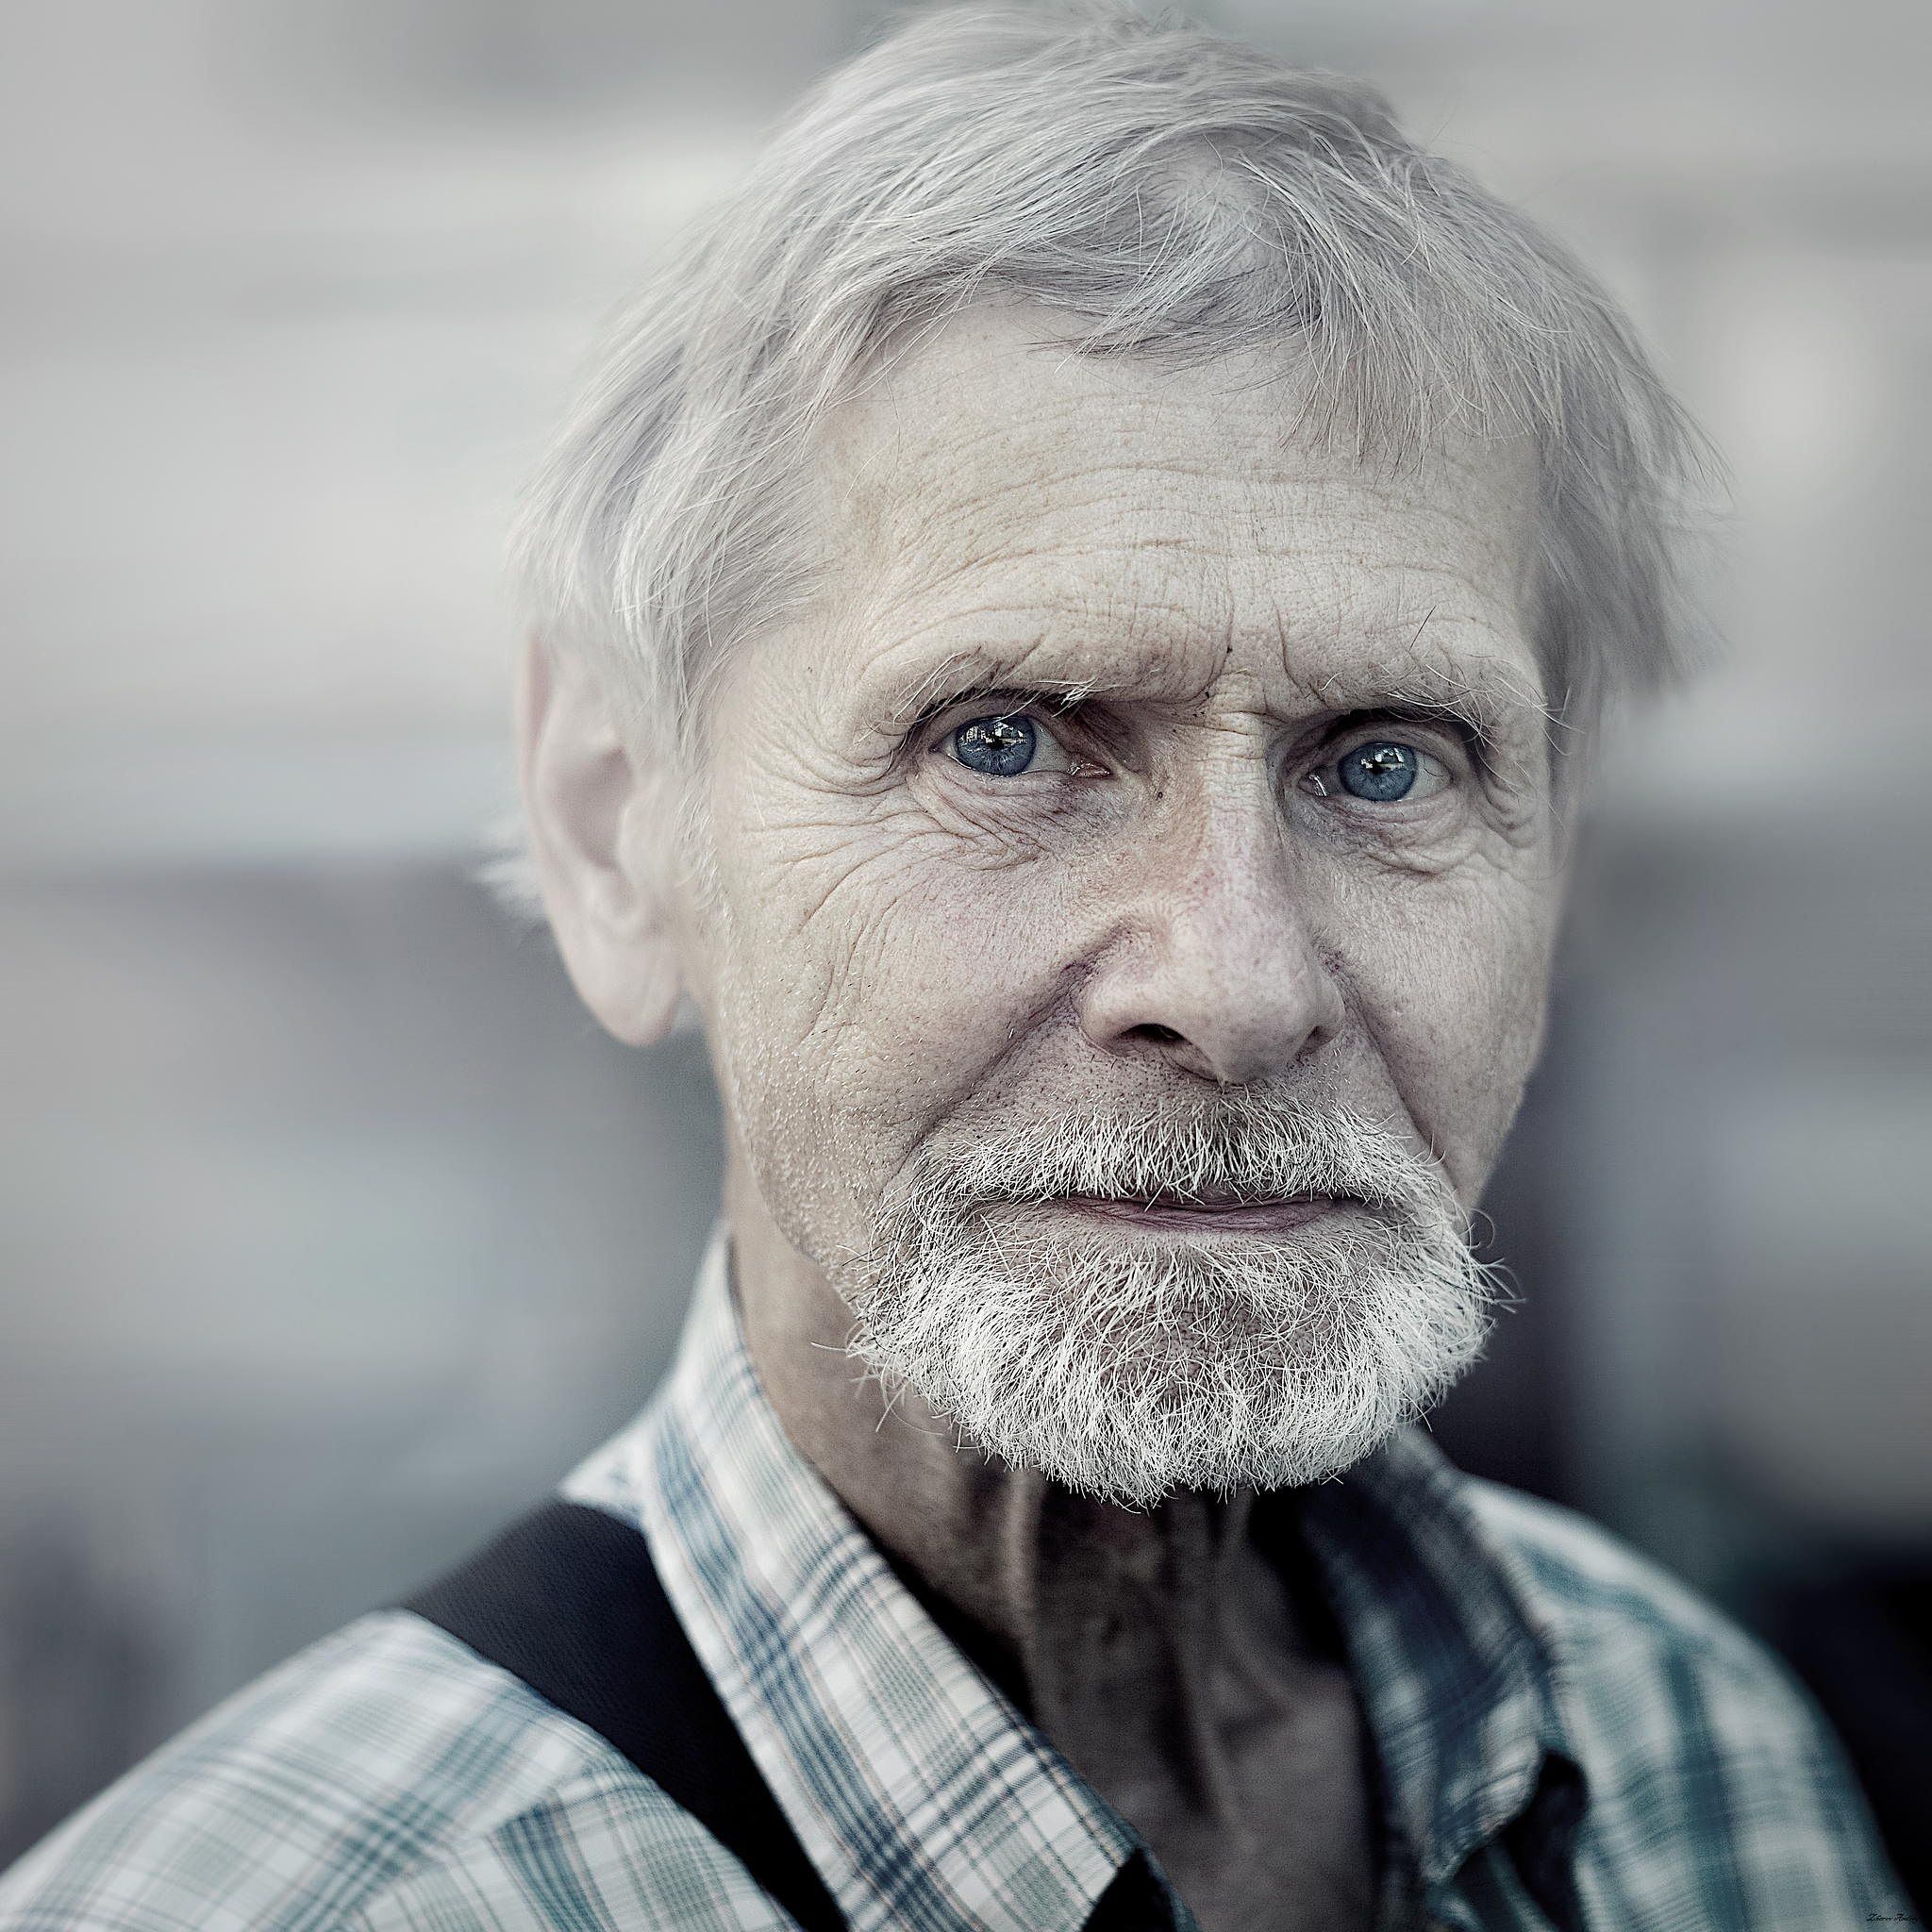 Форум старый мужчина. Фотопортрет старика. Пожилой мужчина. Портрет пожилого мужчины. Фотопортрет пожилого человека.